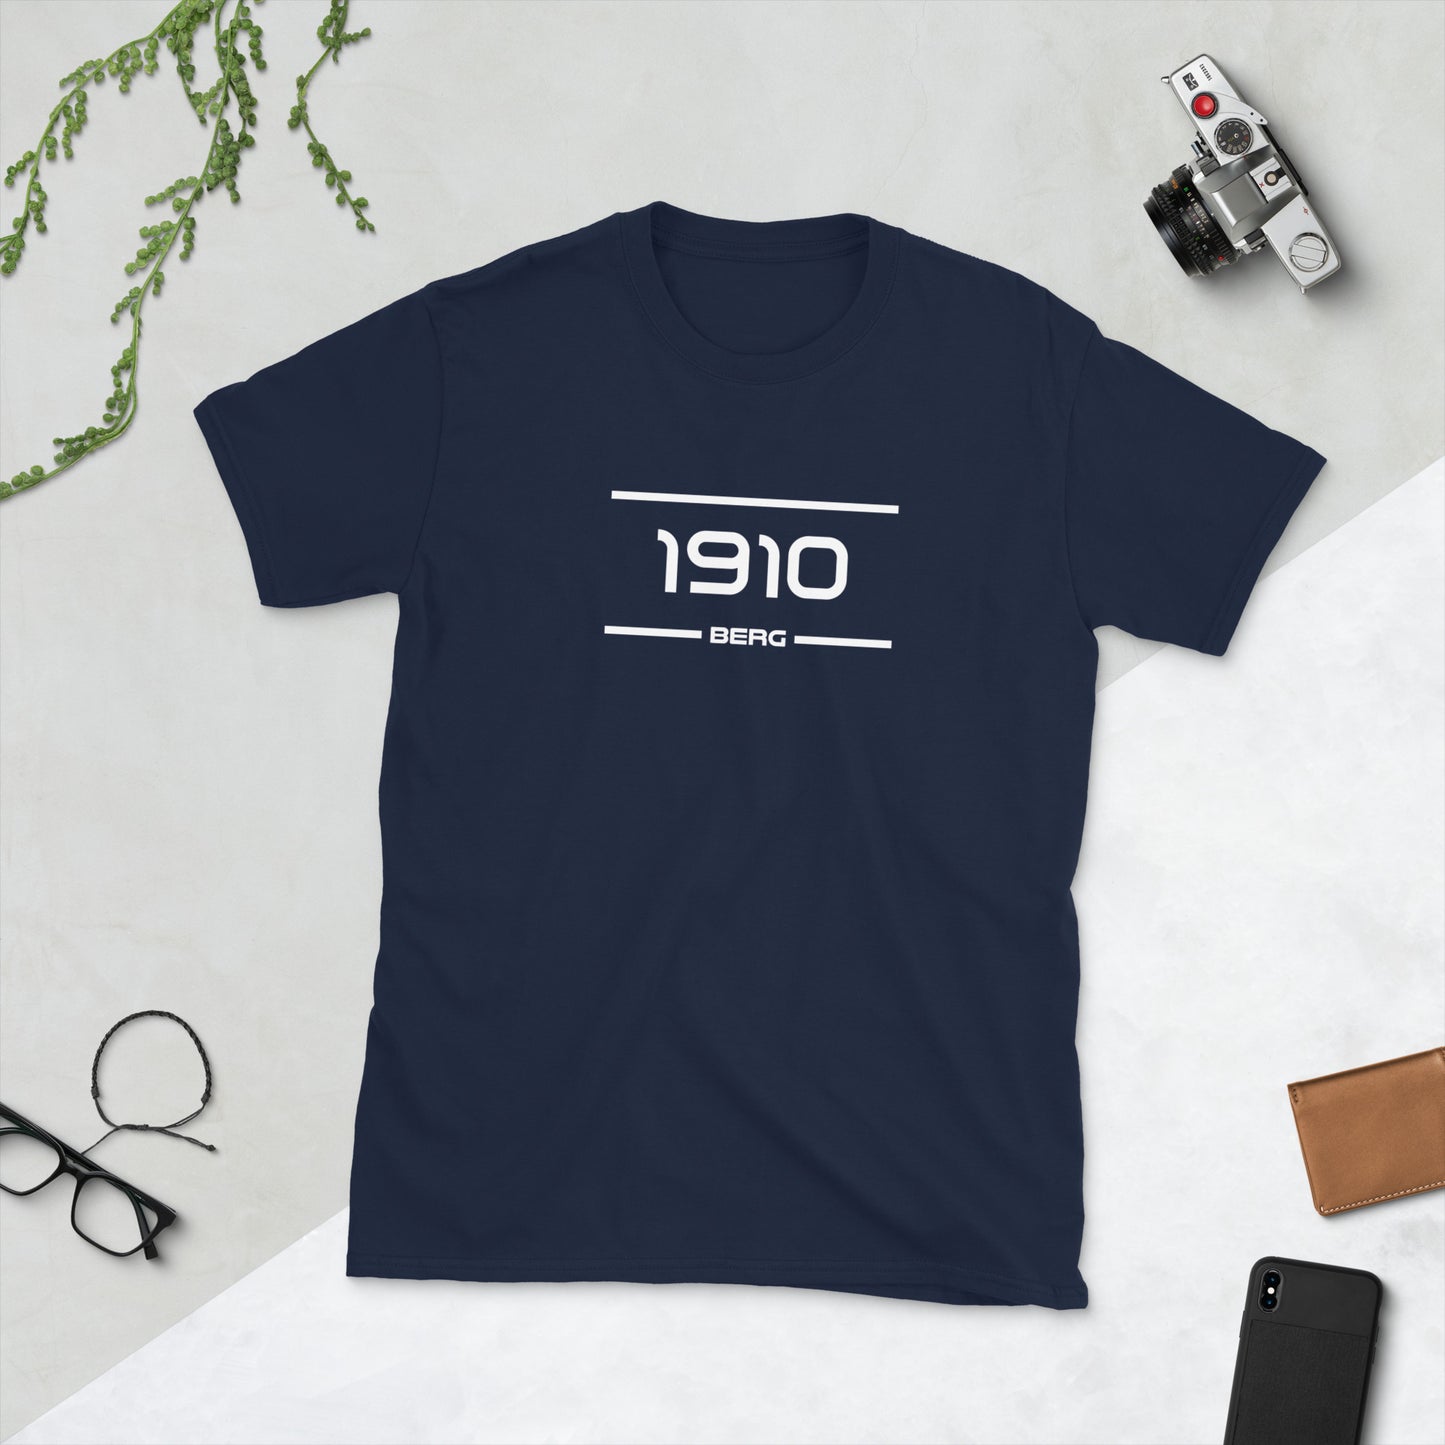 Tshirt - 1910 - Berg